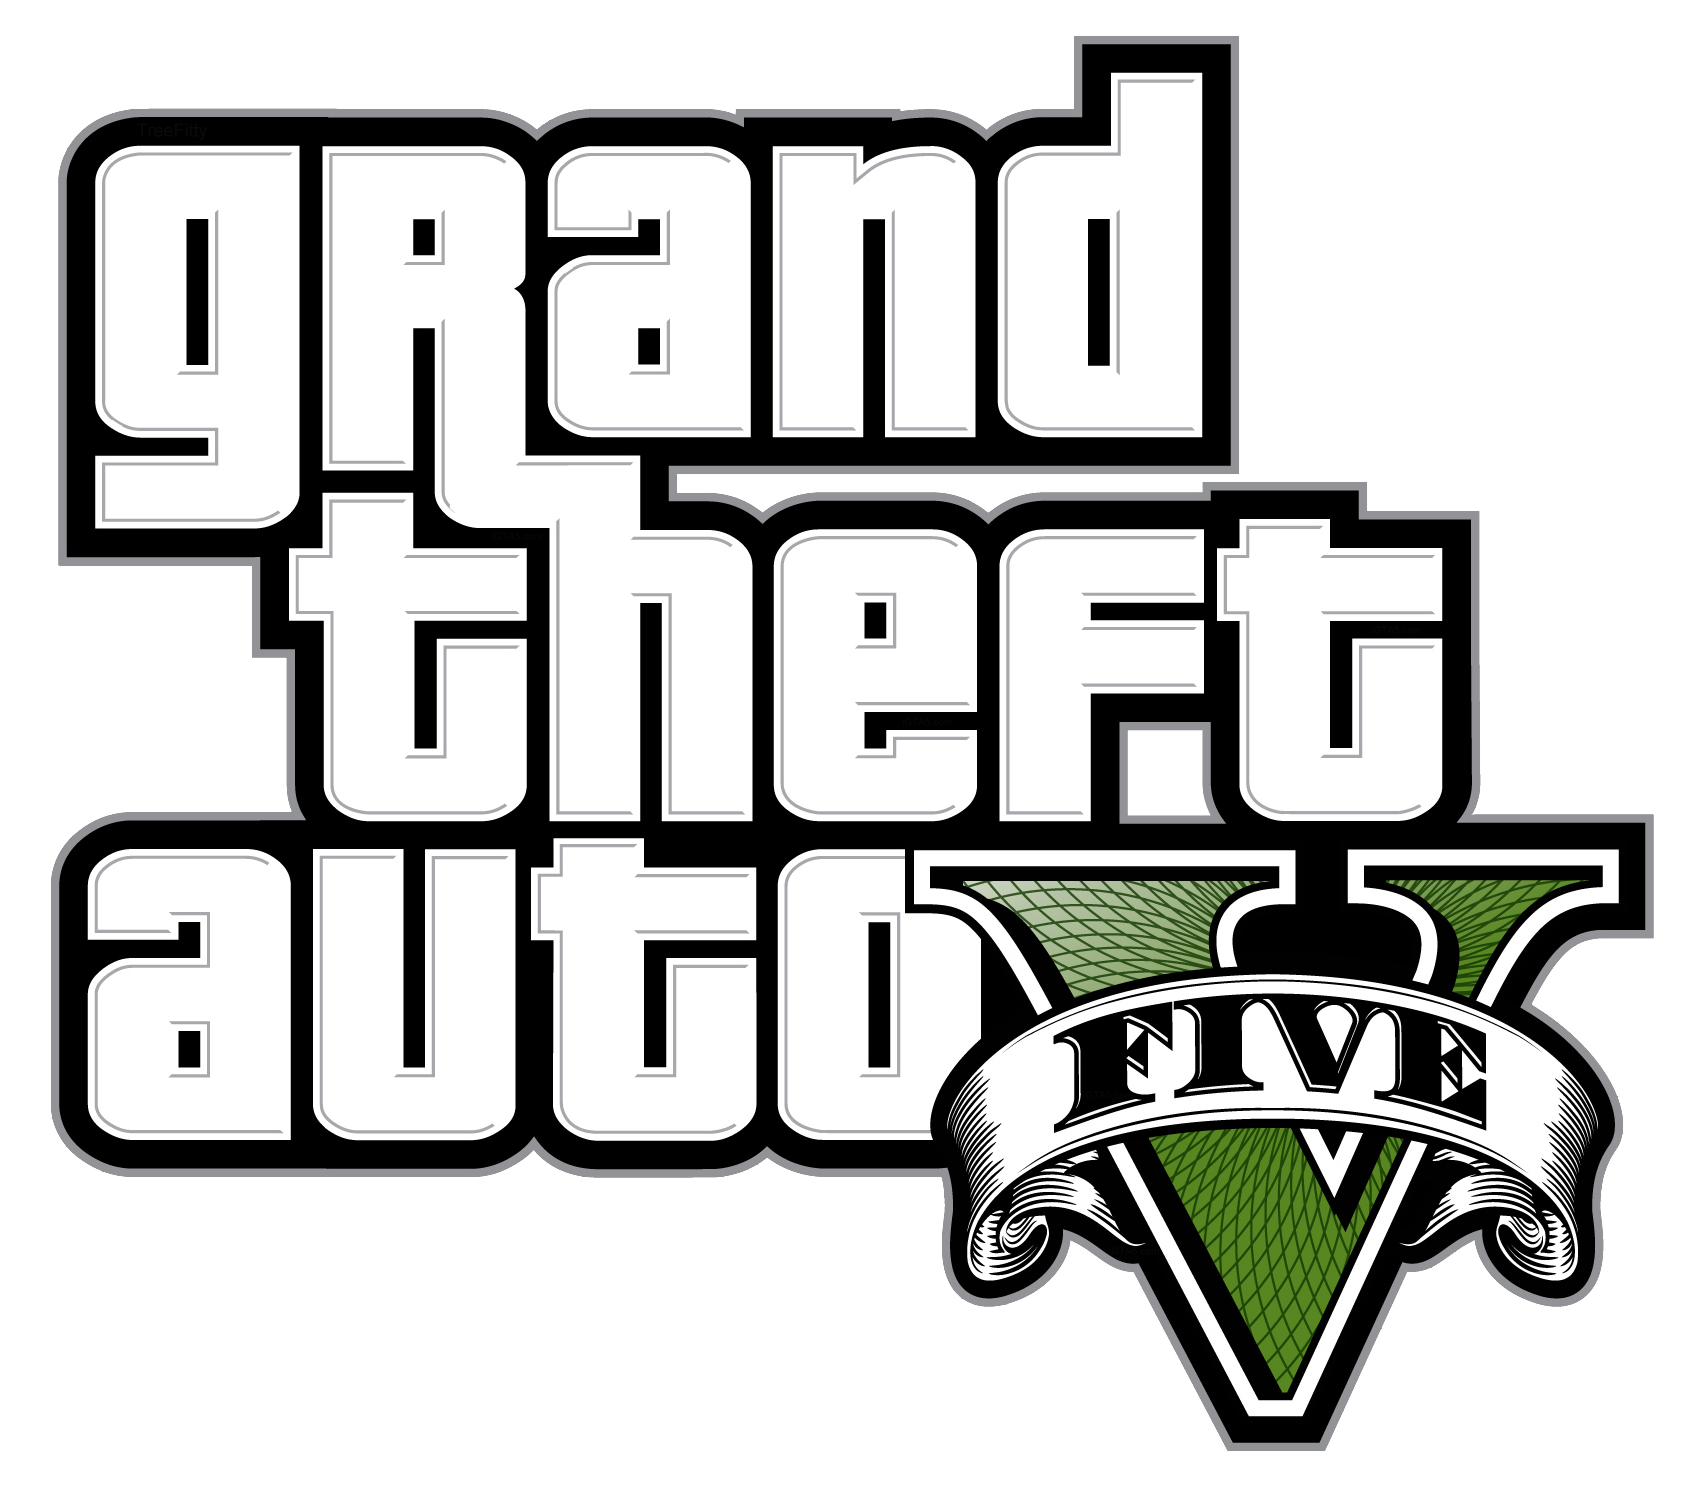 grand theft auto logo transparent